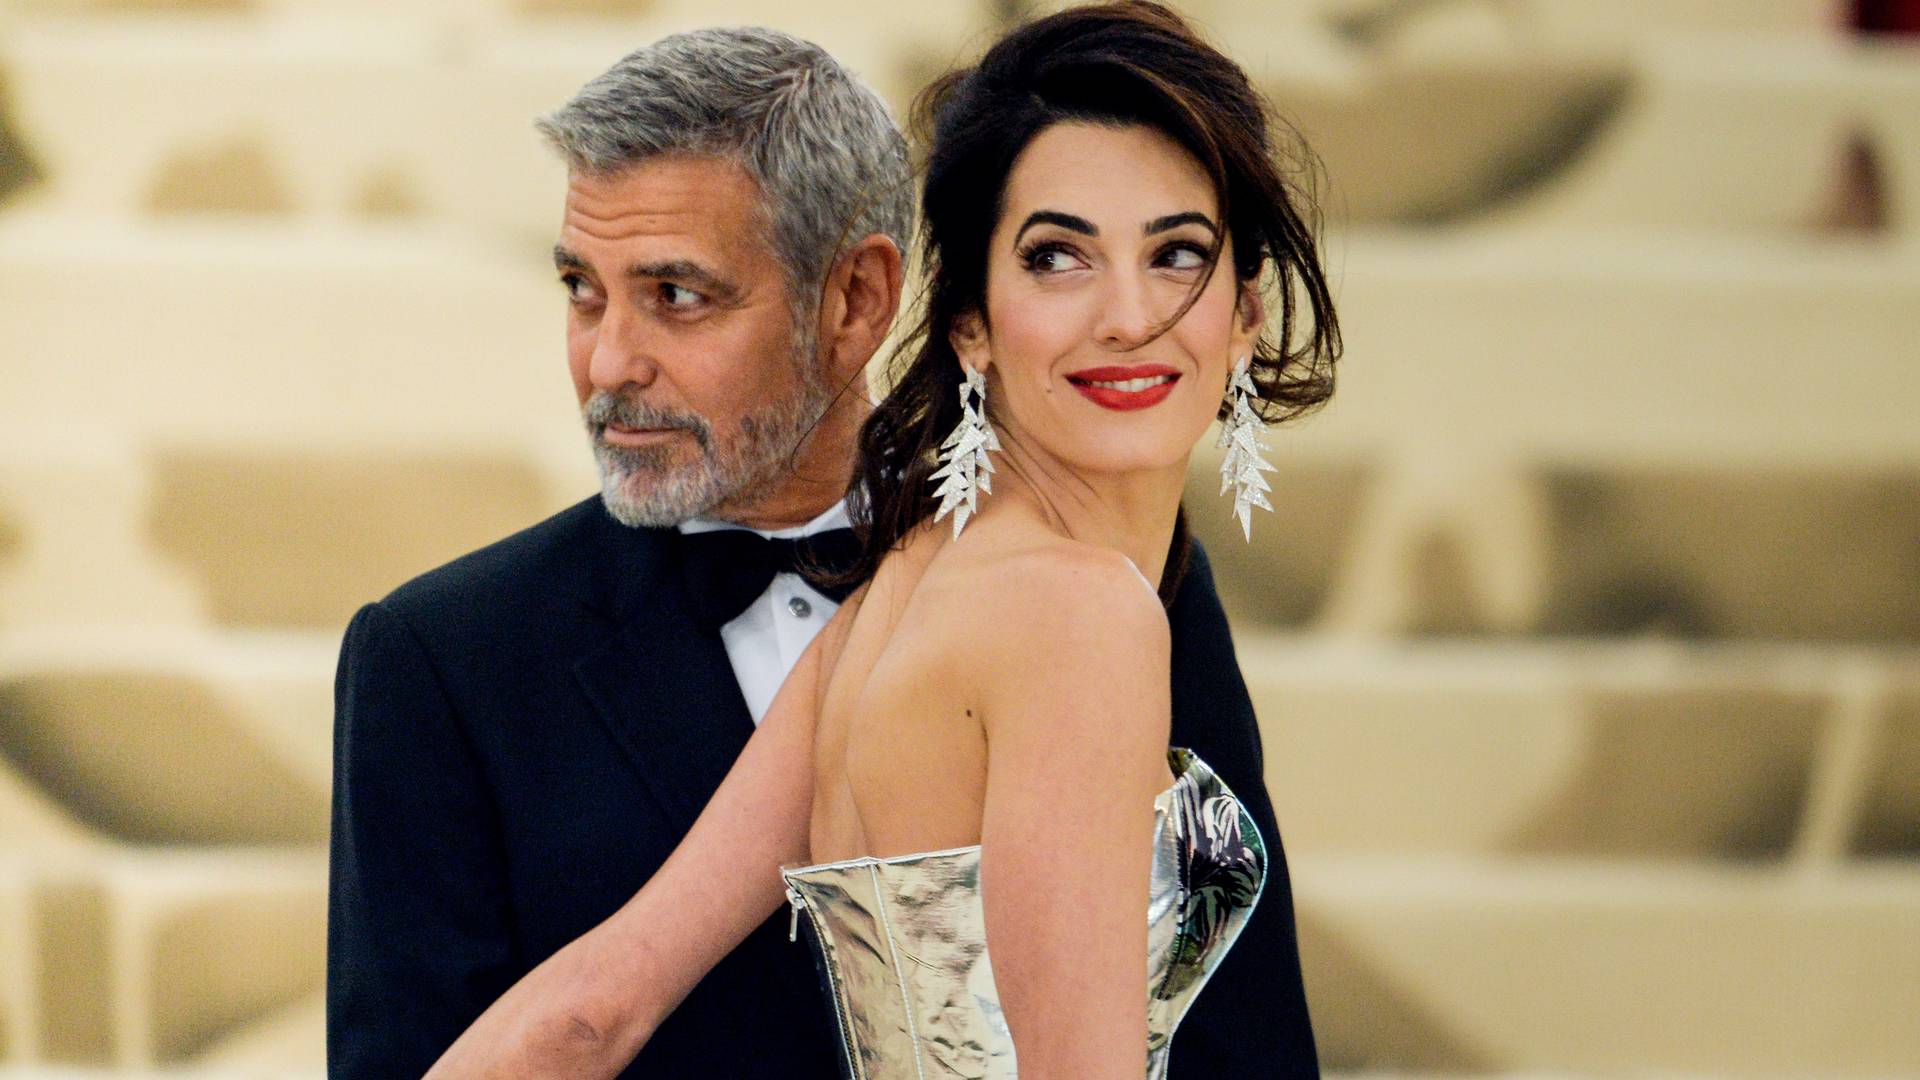 George Clooney zdradził, że NIGDY nie pokłócił się z żoną. "Tak wygląda dobre, dojrzałe małżeństwo"